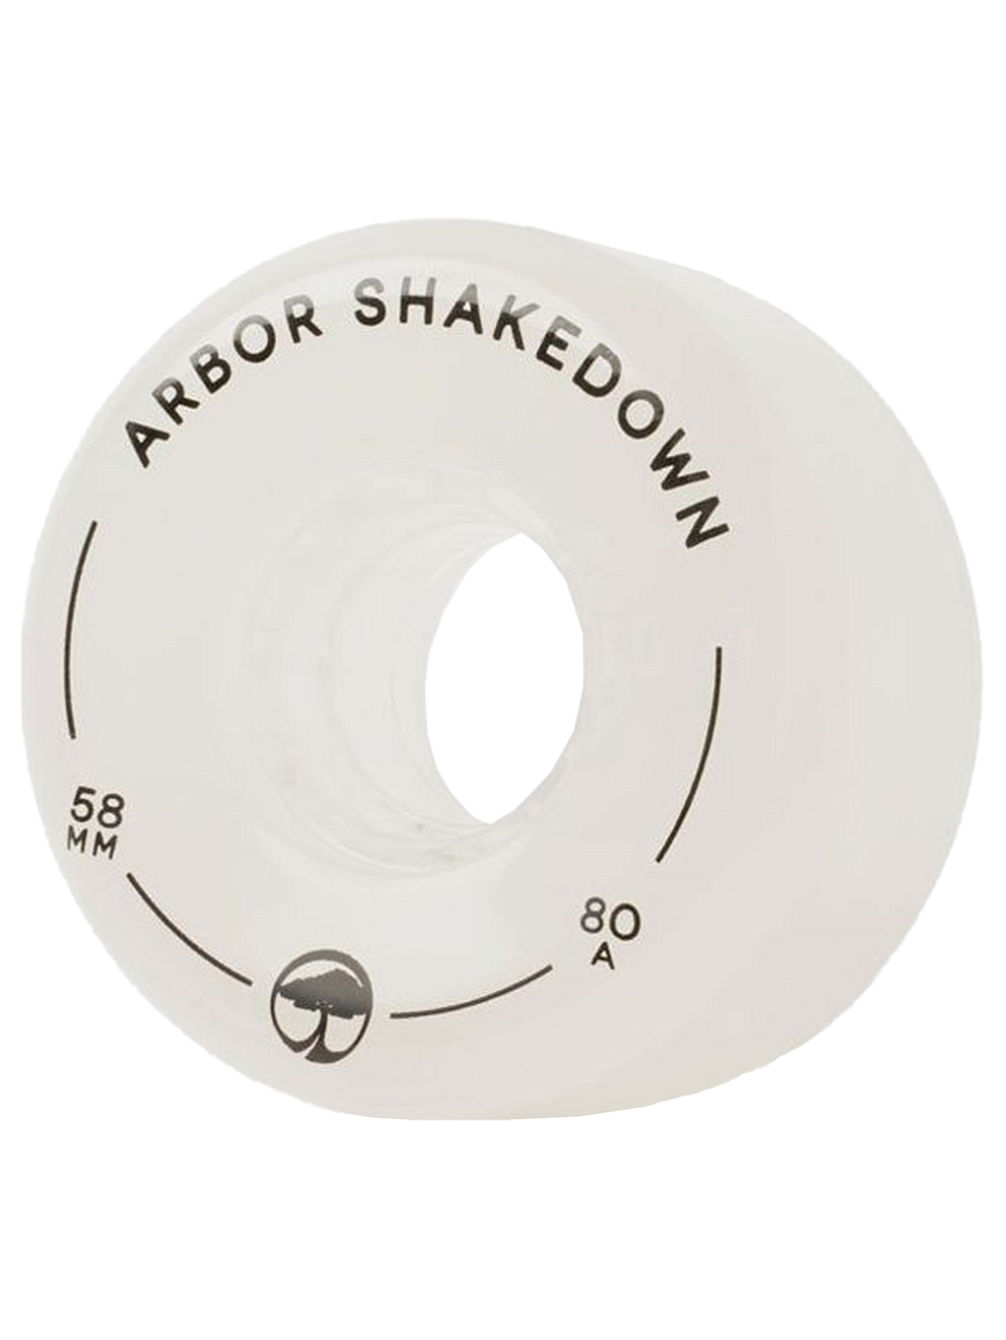 Shakedown 80a 58mm Kole&#269;ka